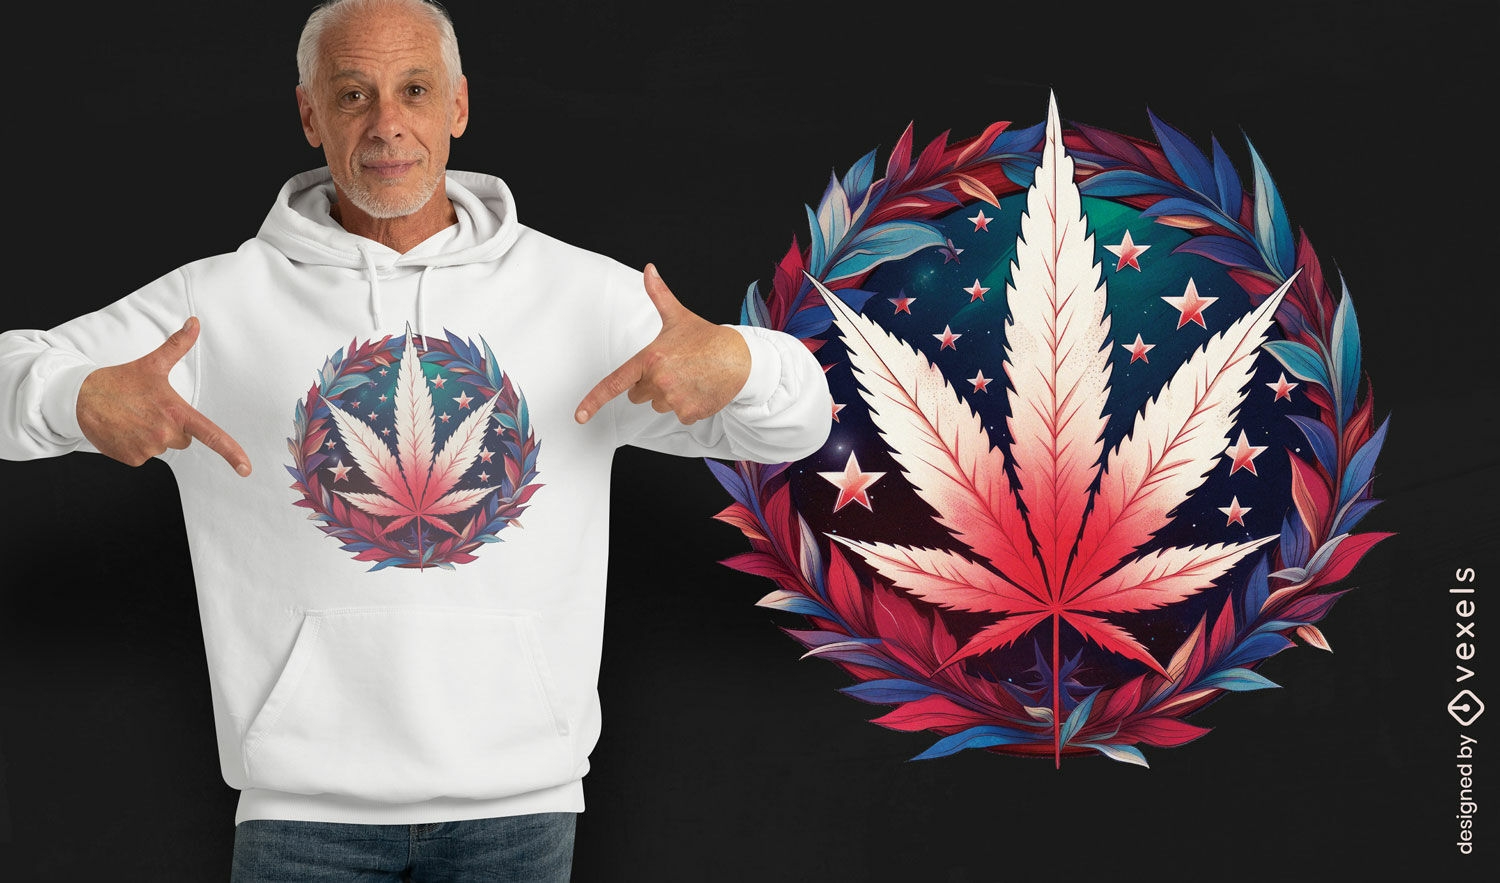 Diseño de camiseta patriótica de hoja de cannabis.